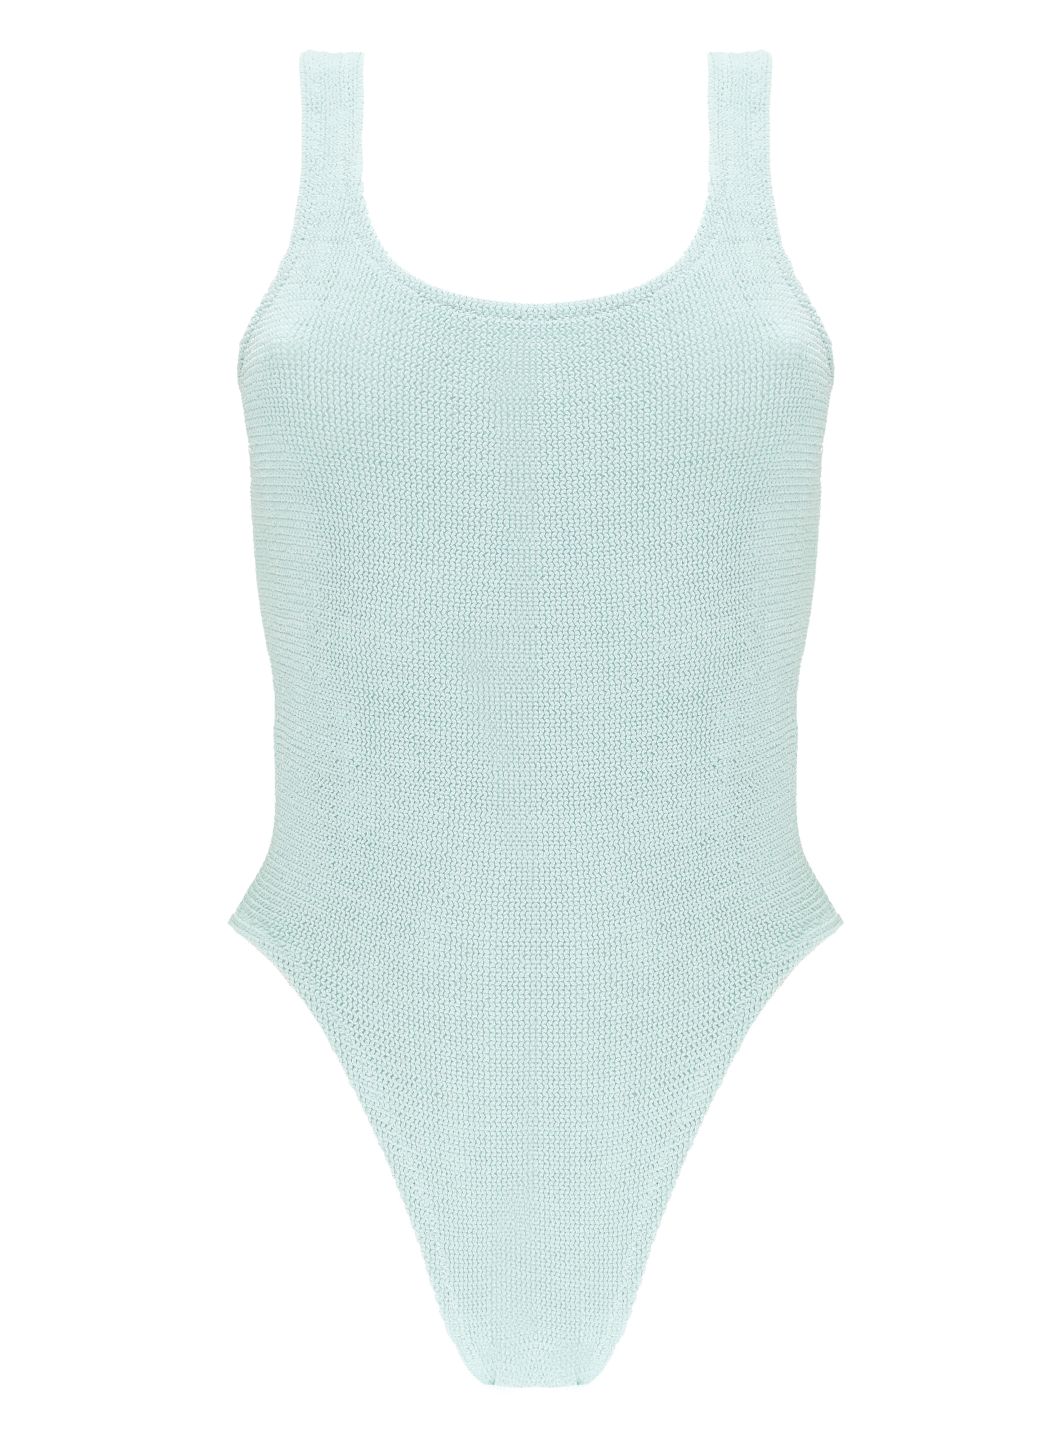 Lora one-piece swimsuit